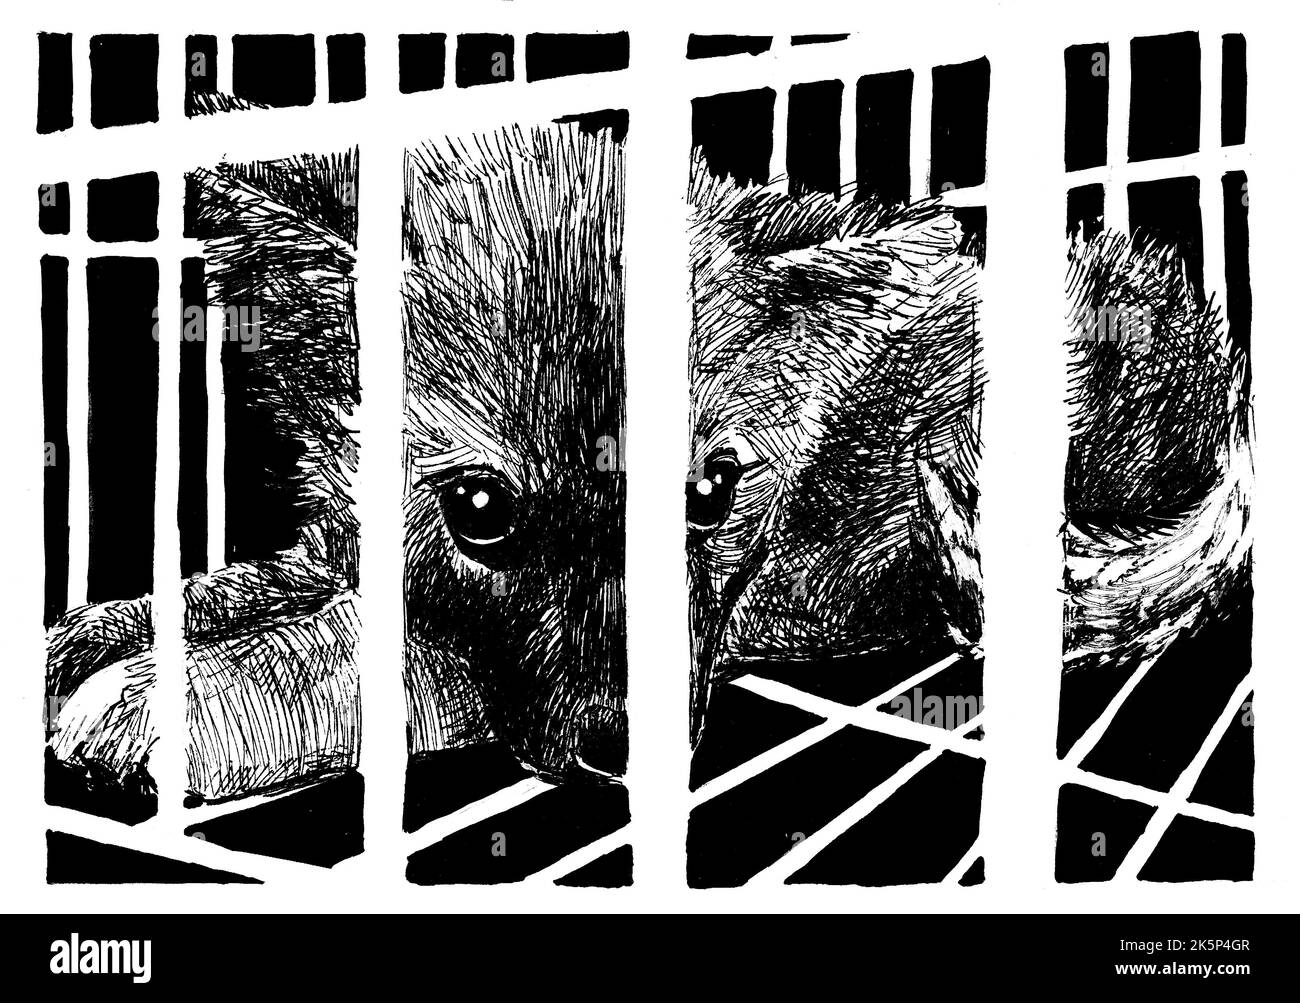 Un chiot est malheureusement enfermé dans une cage. Illustration monochrome faite à la main avec plume et peinture. Banque D'Images